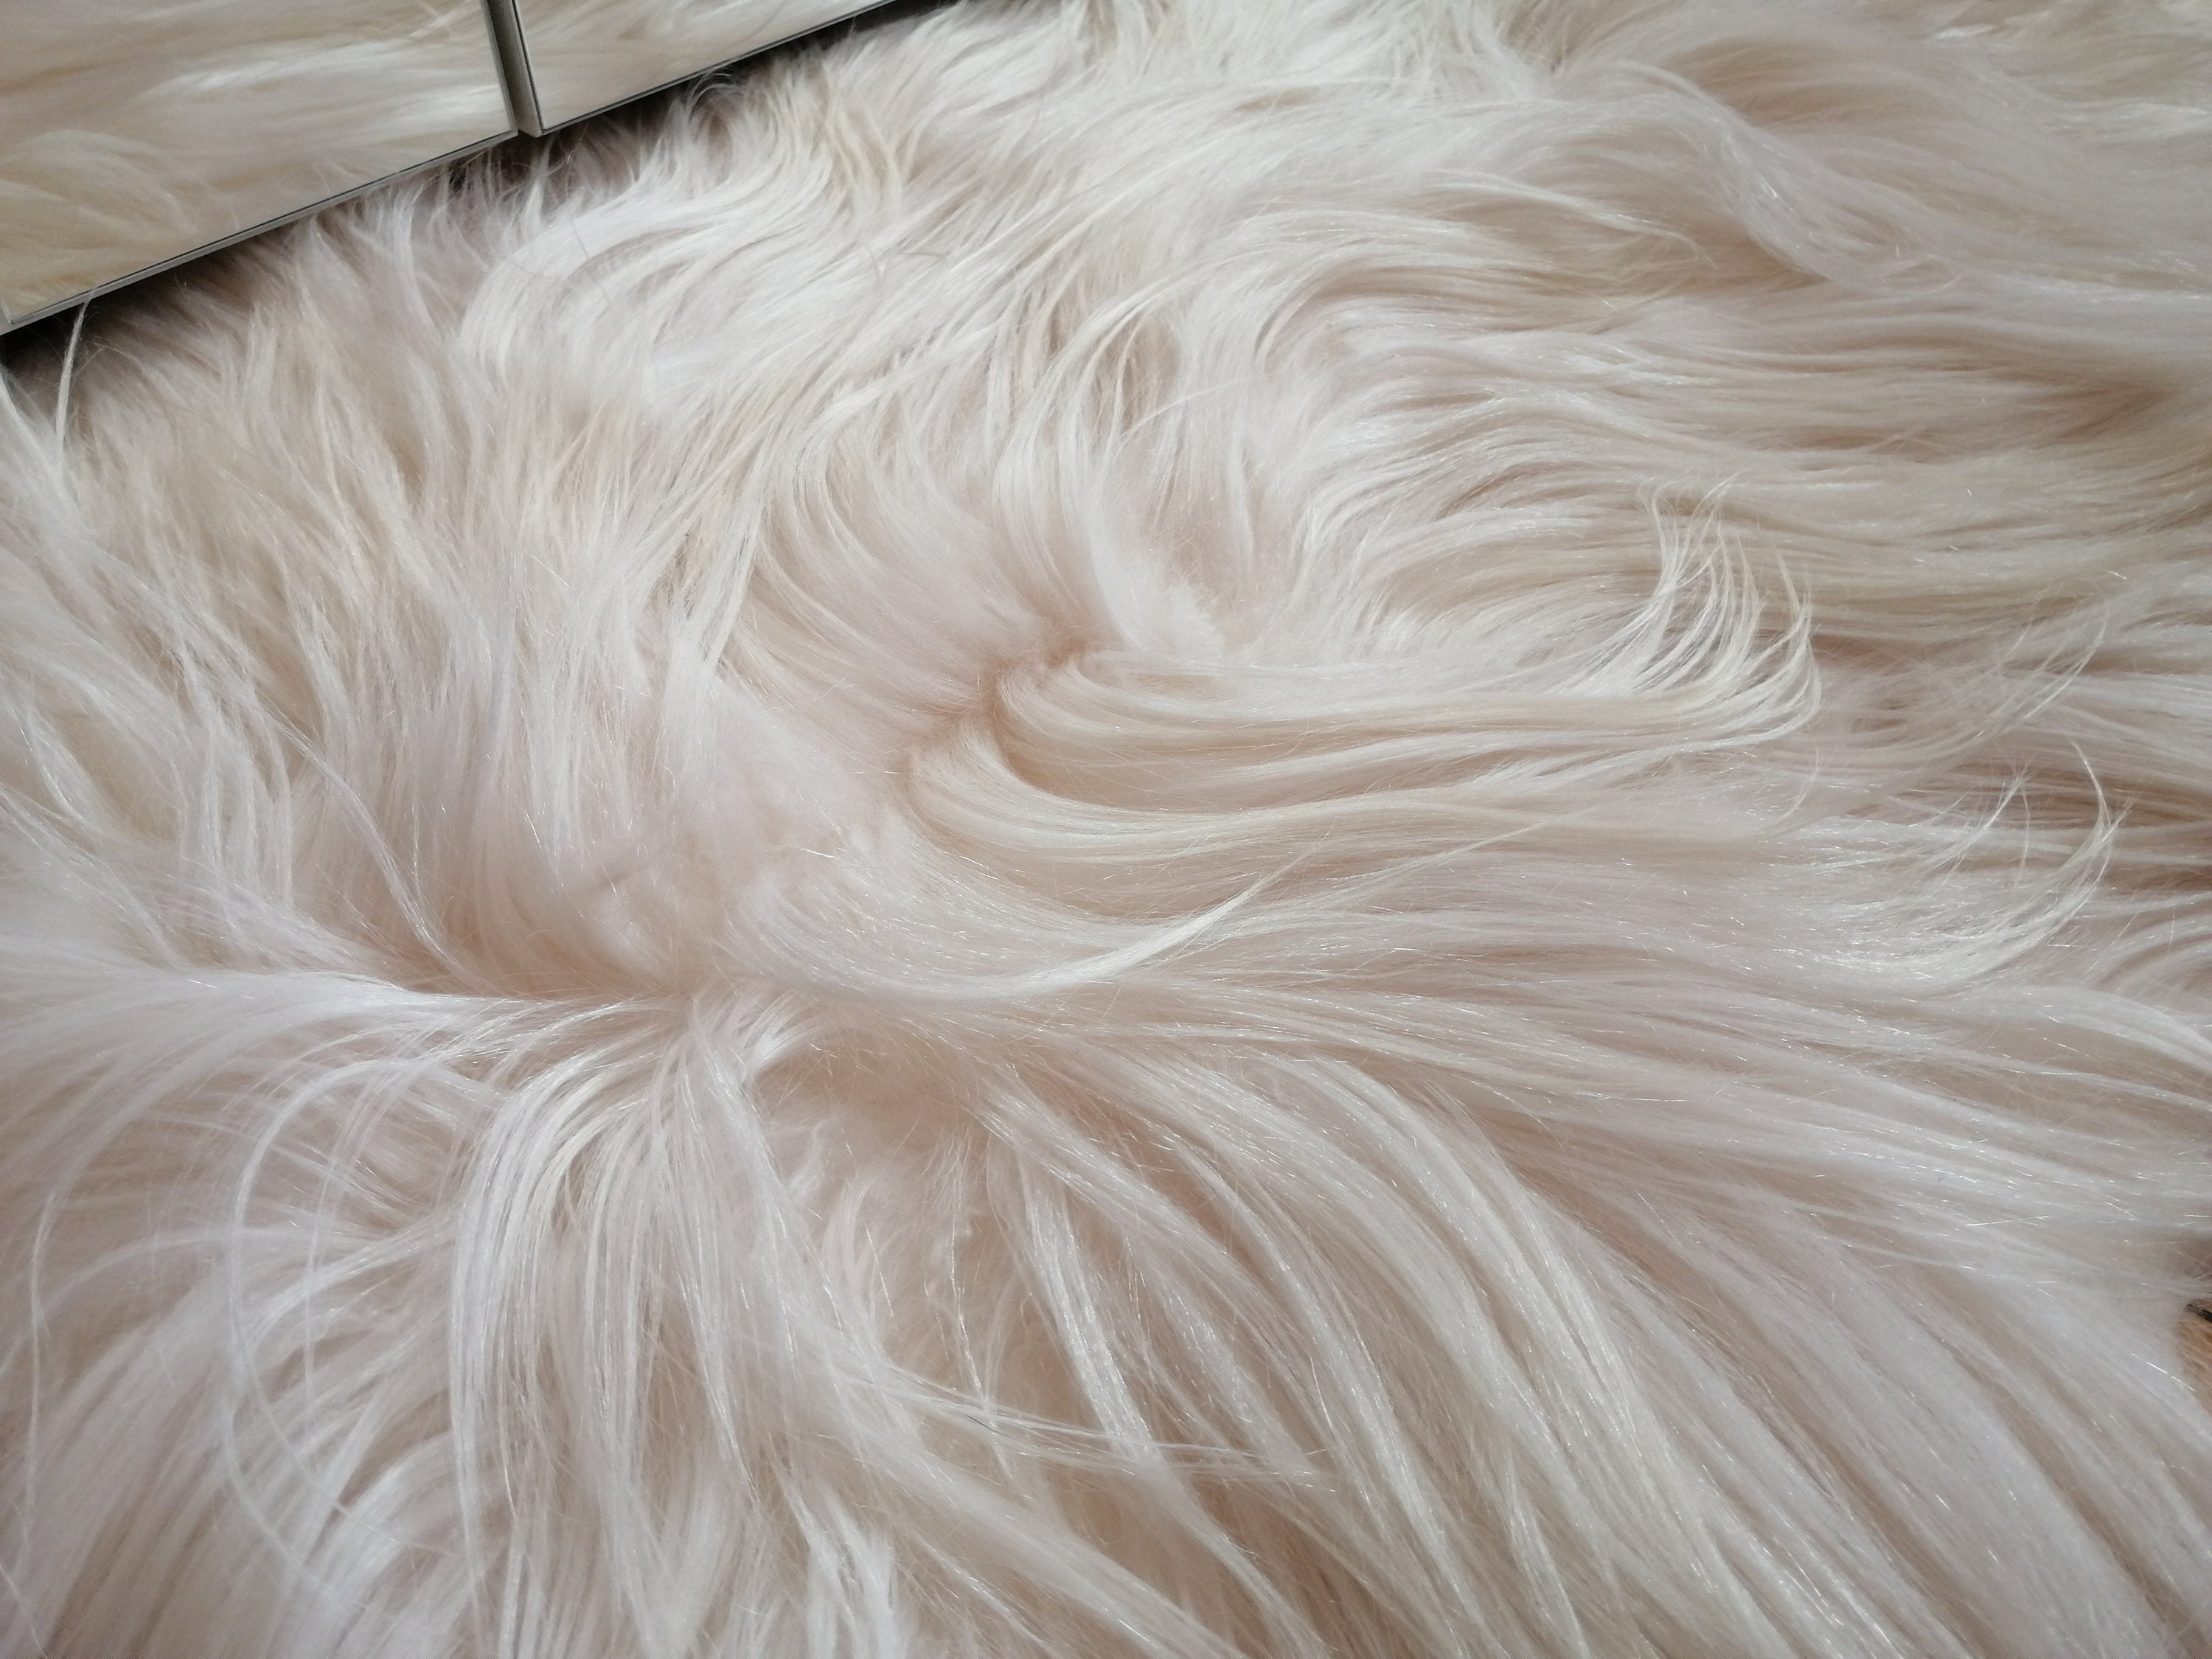 White fur carpet long hair sheep | Etsy